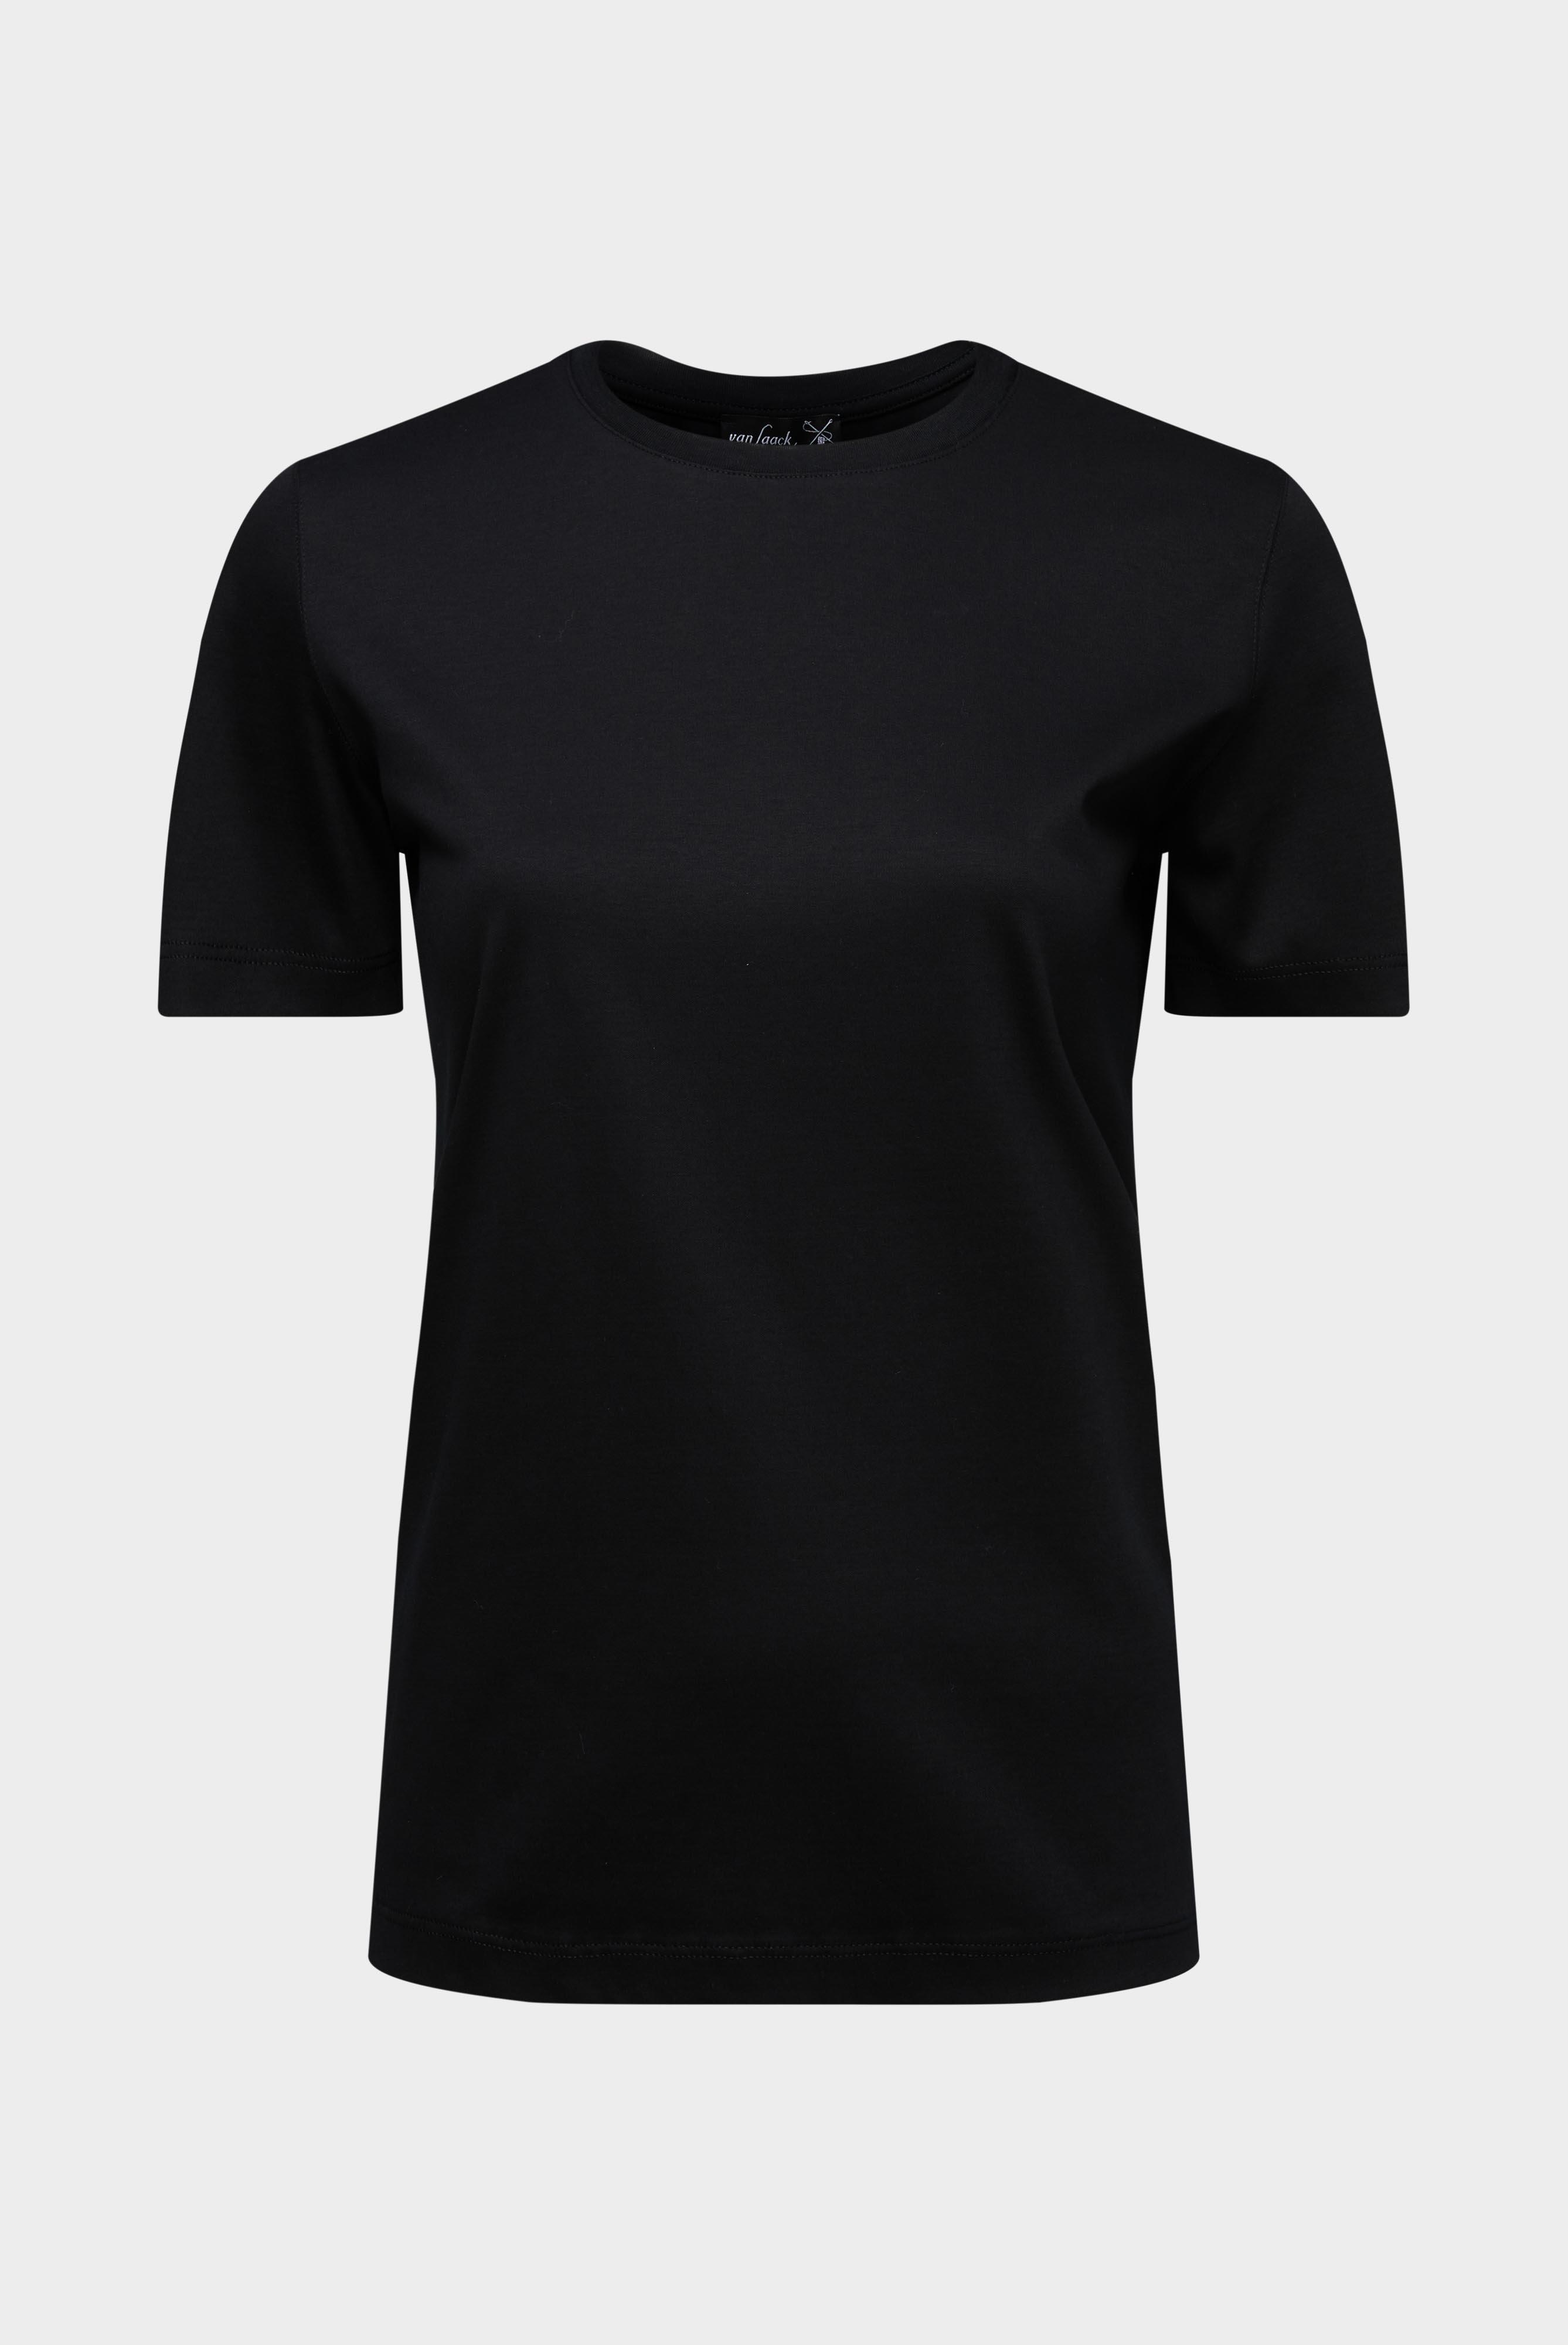 Tops & T-Shirts+Jersey T-Shirt+05.6384.18.180031.099.42